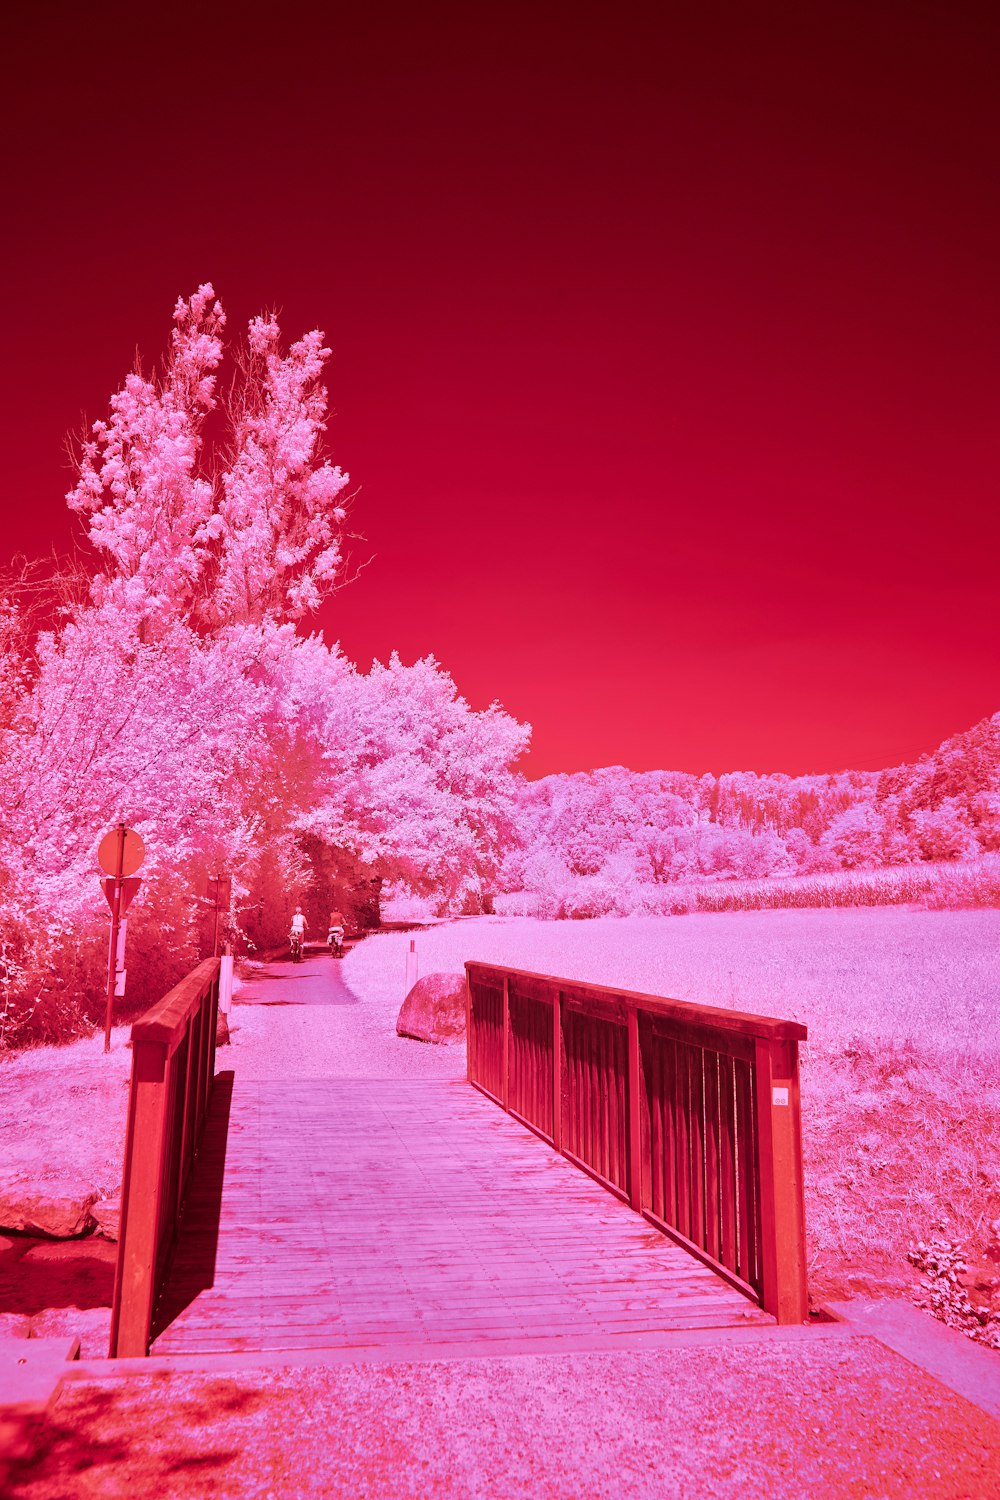 une image infrarouge rouge et rose d’un pont